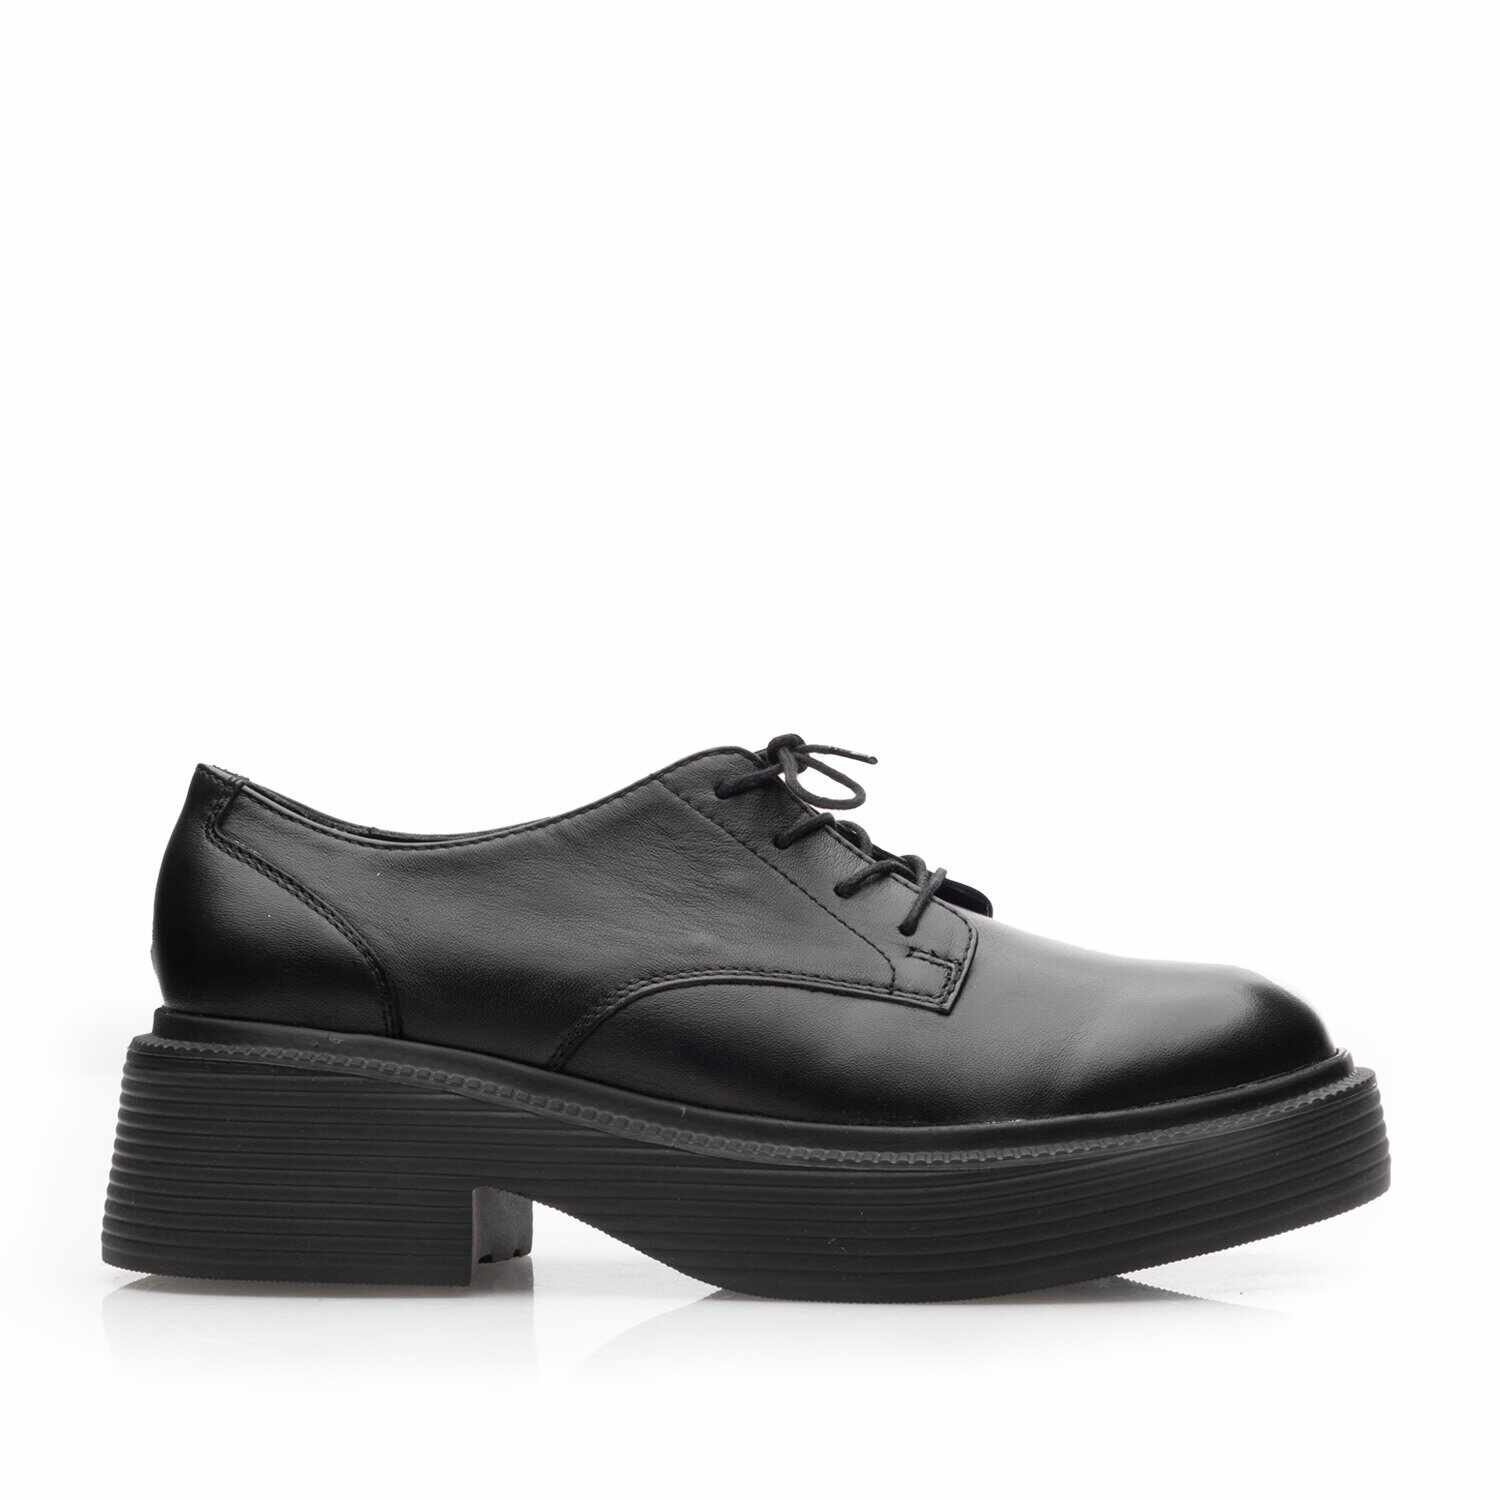 Pantofi casual damă din piele naturală, Leofex - 379 Negru Box